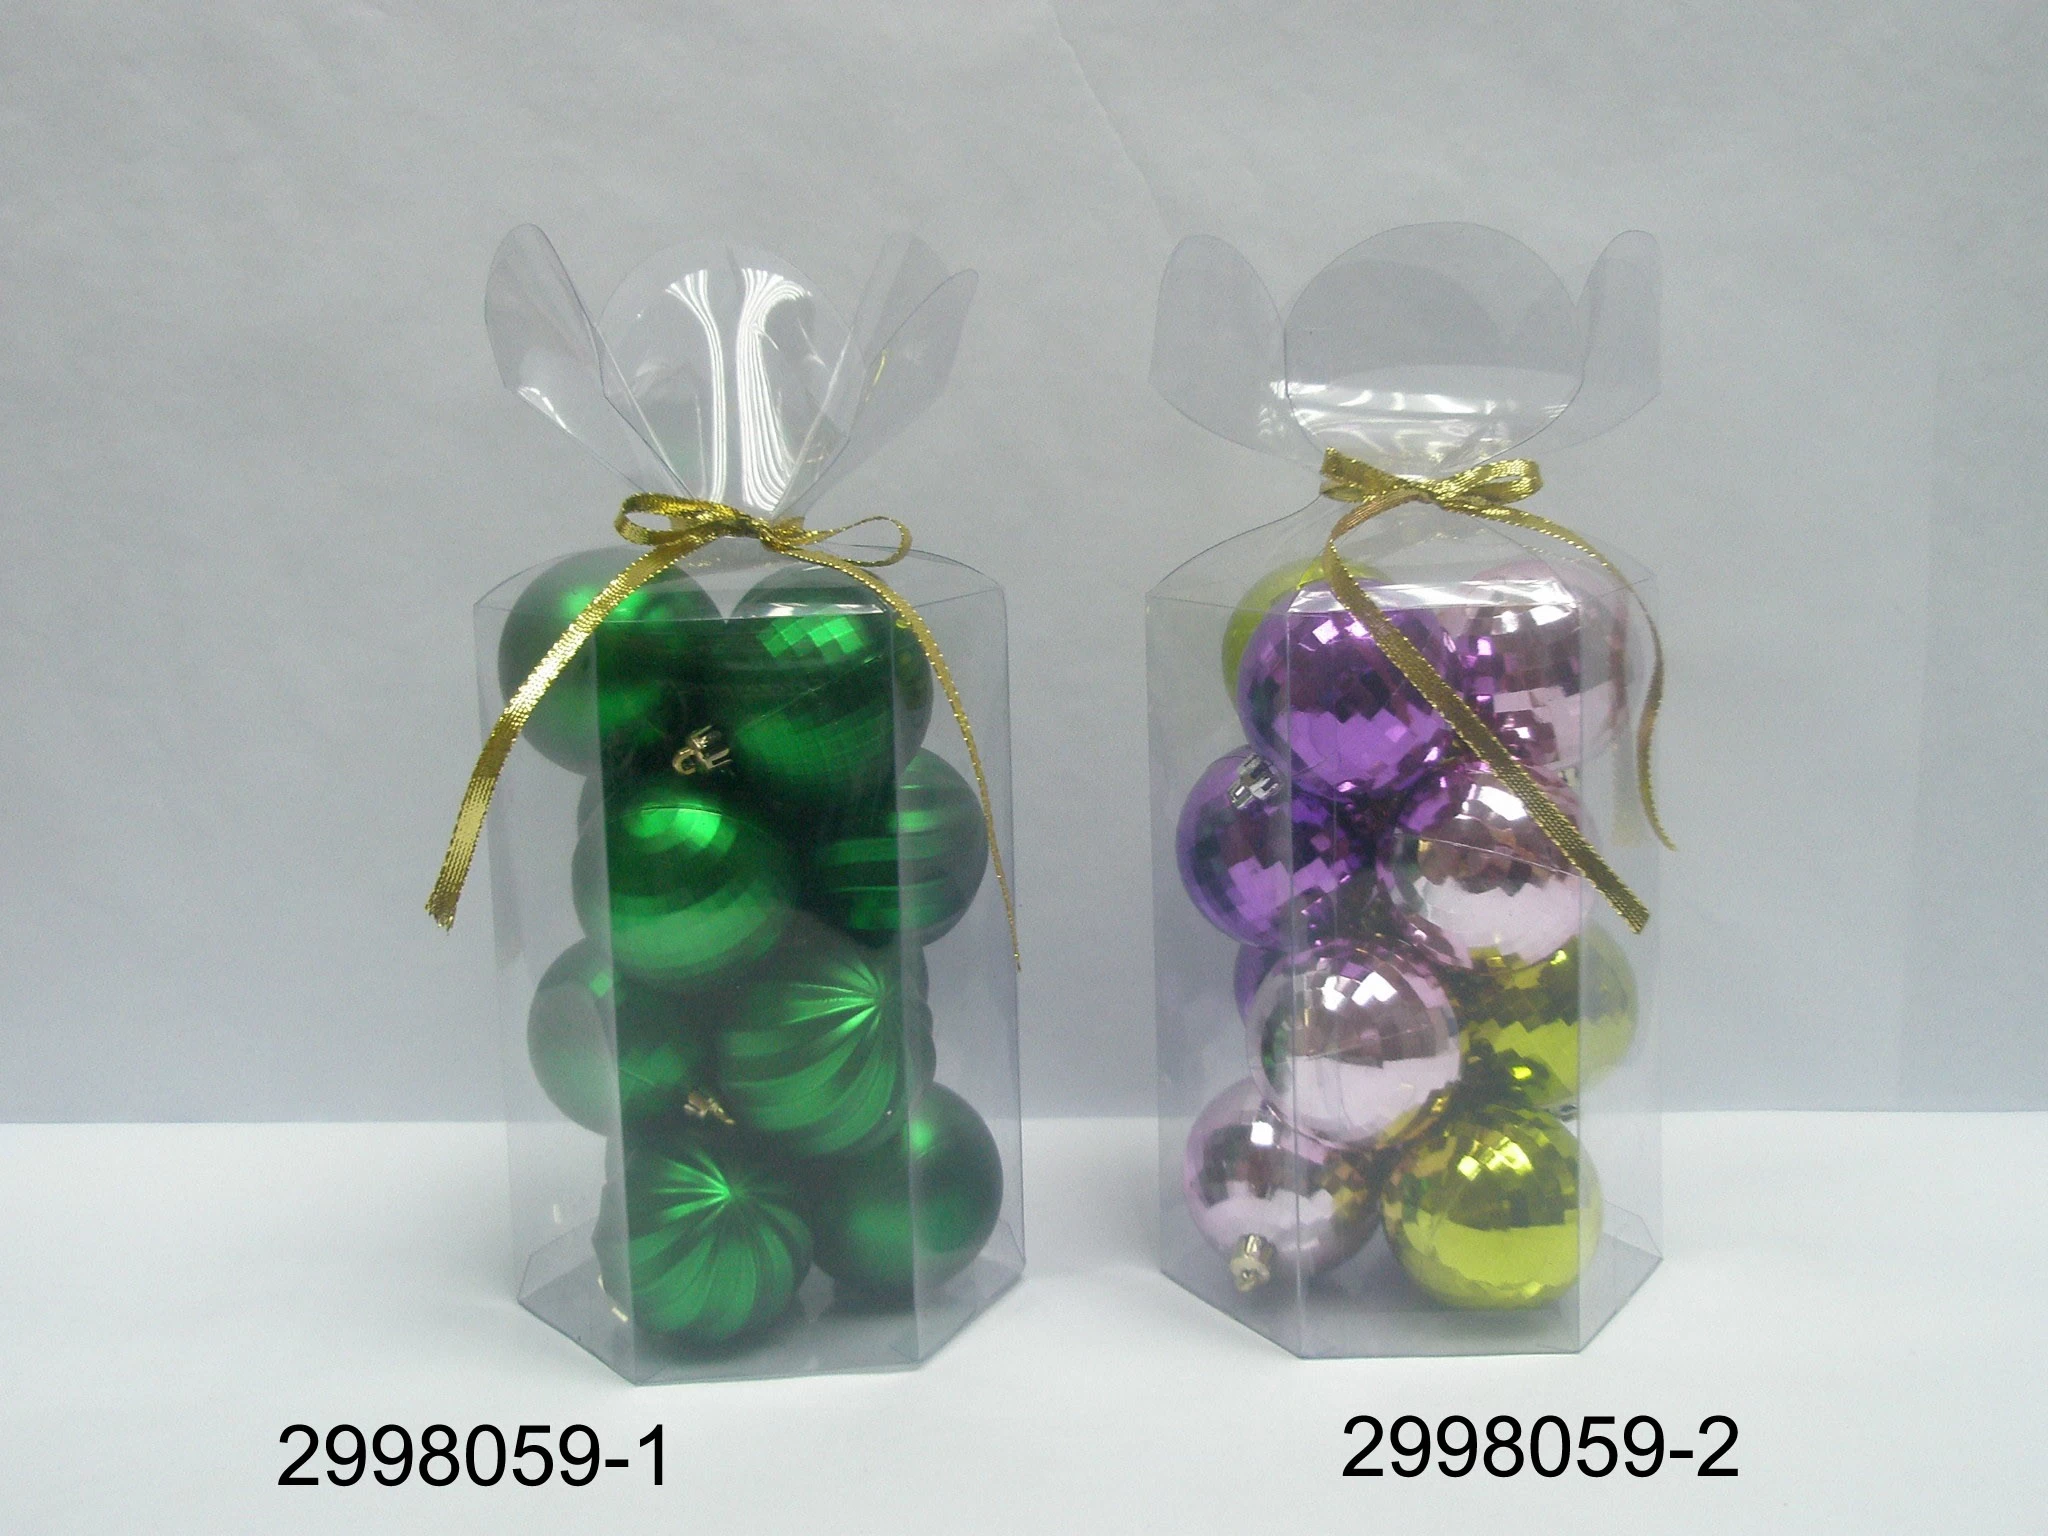 中国 最高品质的塑料球圣诞节装饰品 制造商